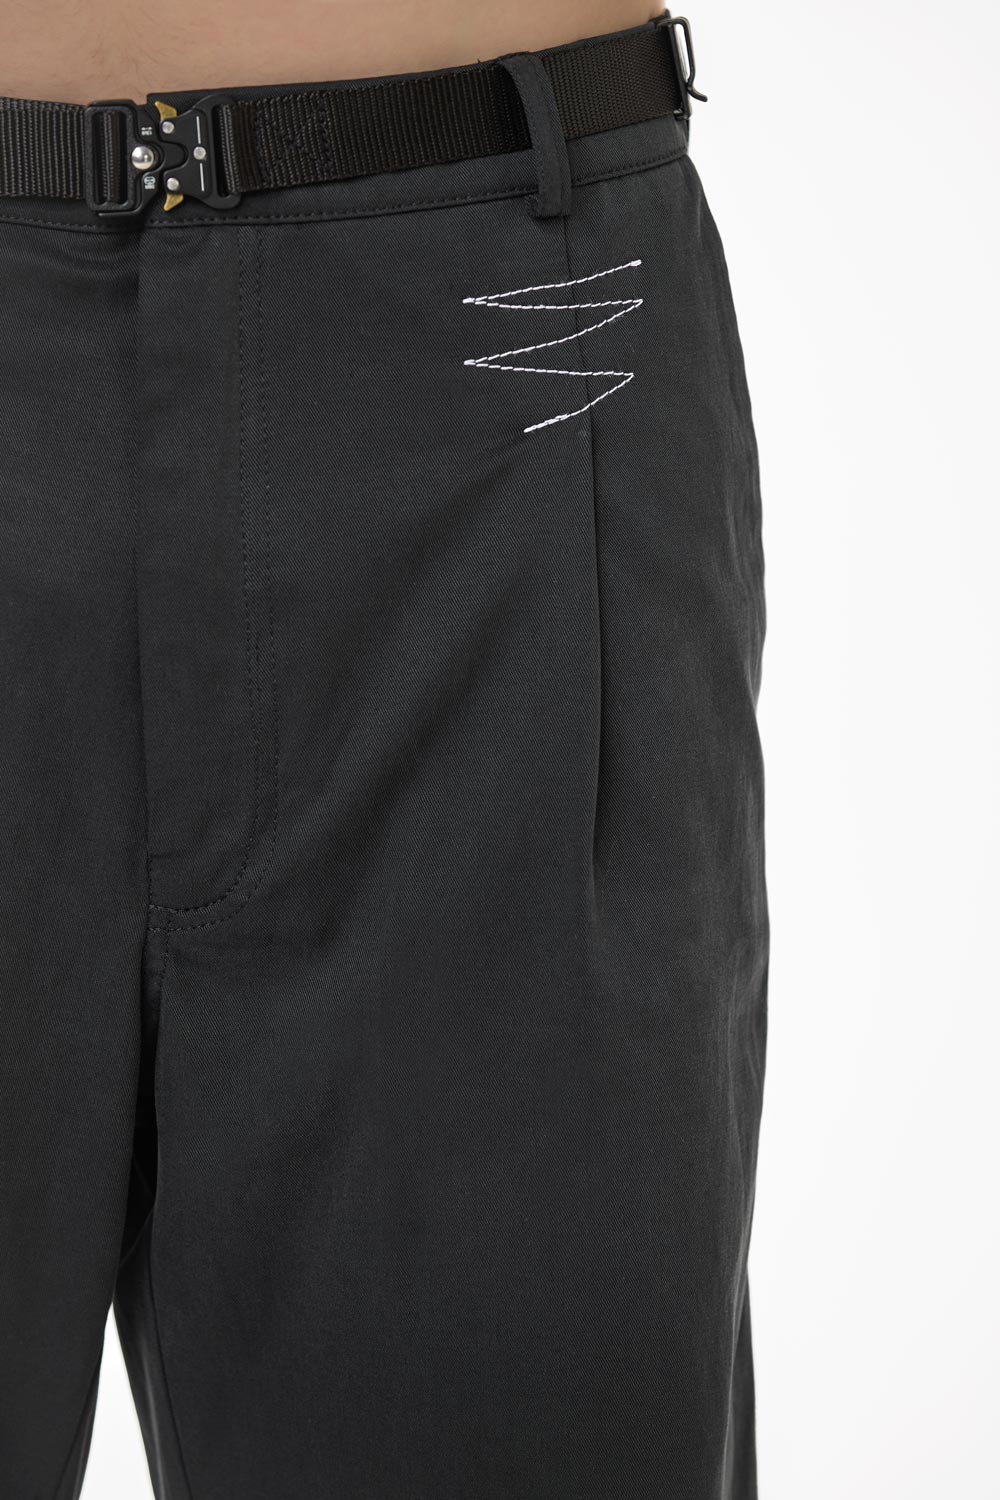 Pantaloni scurți negri pentru bărbați "Rome" Atelier Hamza, din 100% lyocell, croială relaxată, confort în zilele călduroase